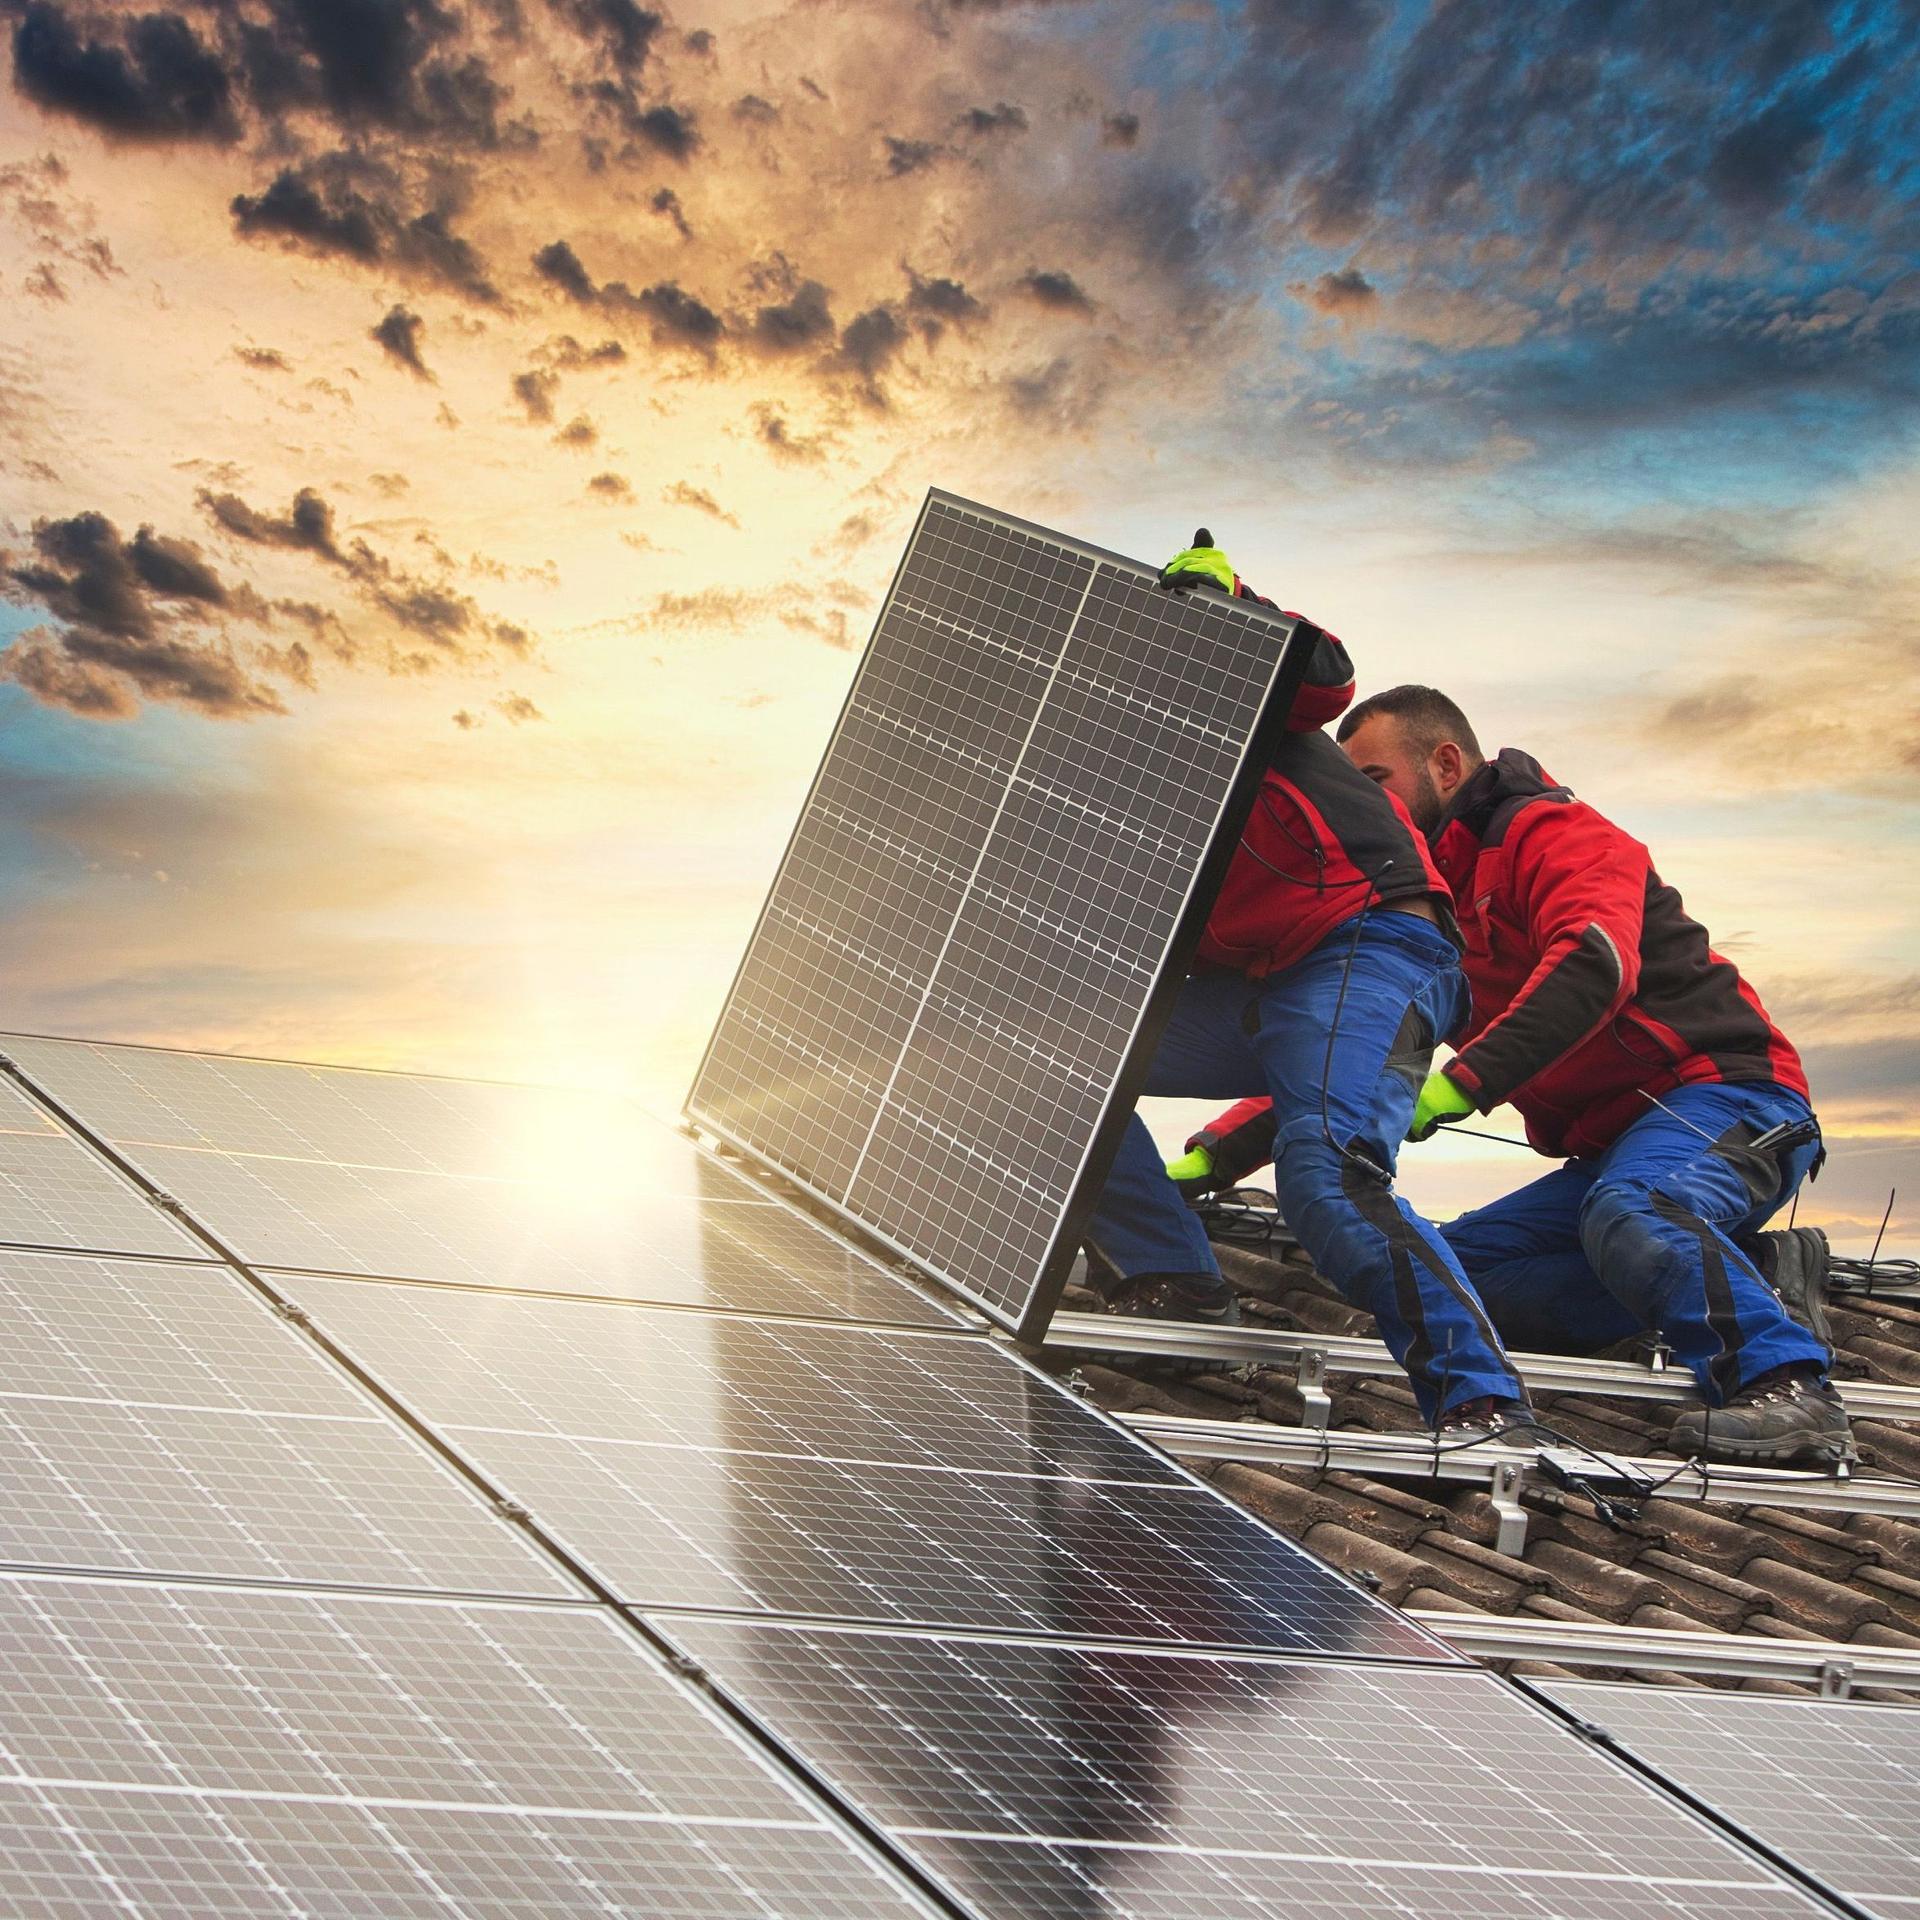 Zwei Männer installieren bei aufgehender Sonne Solarpanele auf einem Firmendach.